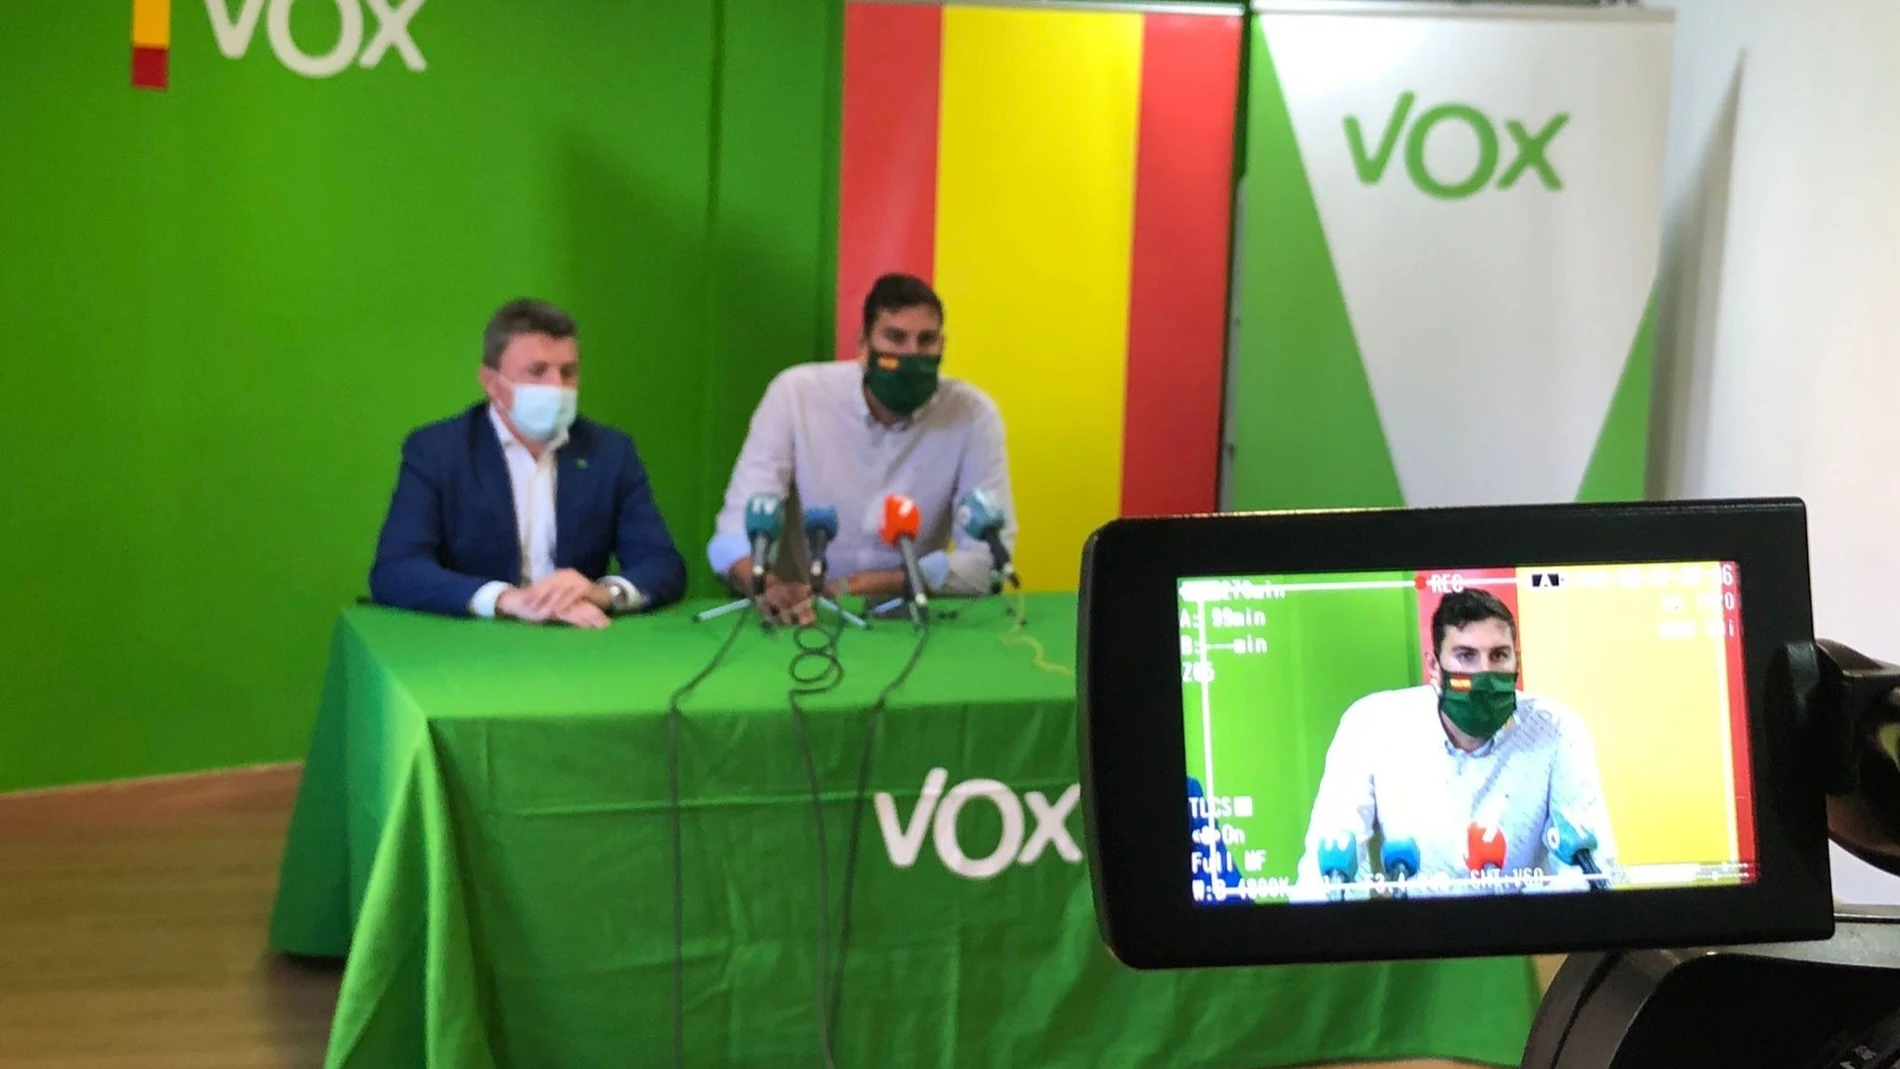 El diputado regional de VOX, Pascual Salvador; y el presidente de VOX Murcia José Ángel AnteloVOX19/05/2021